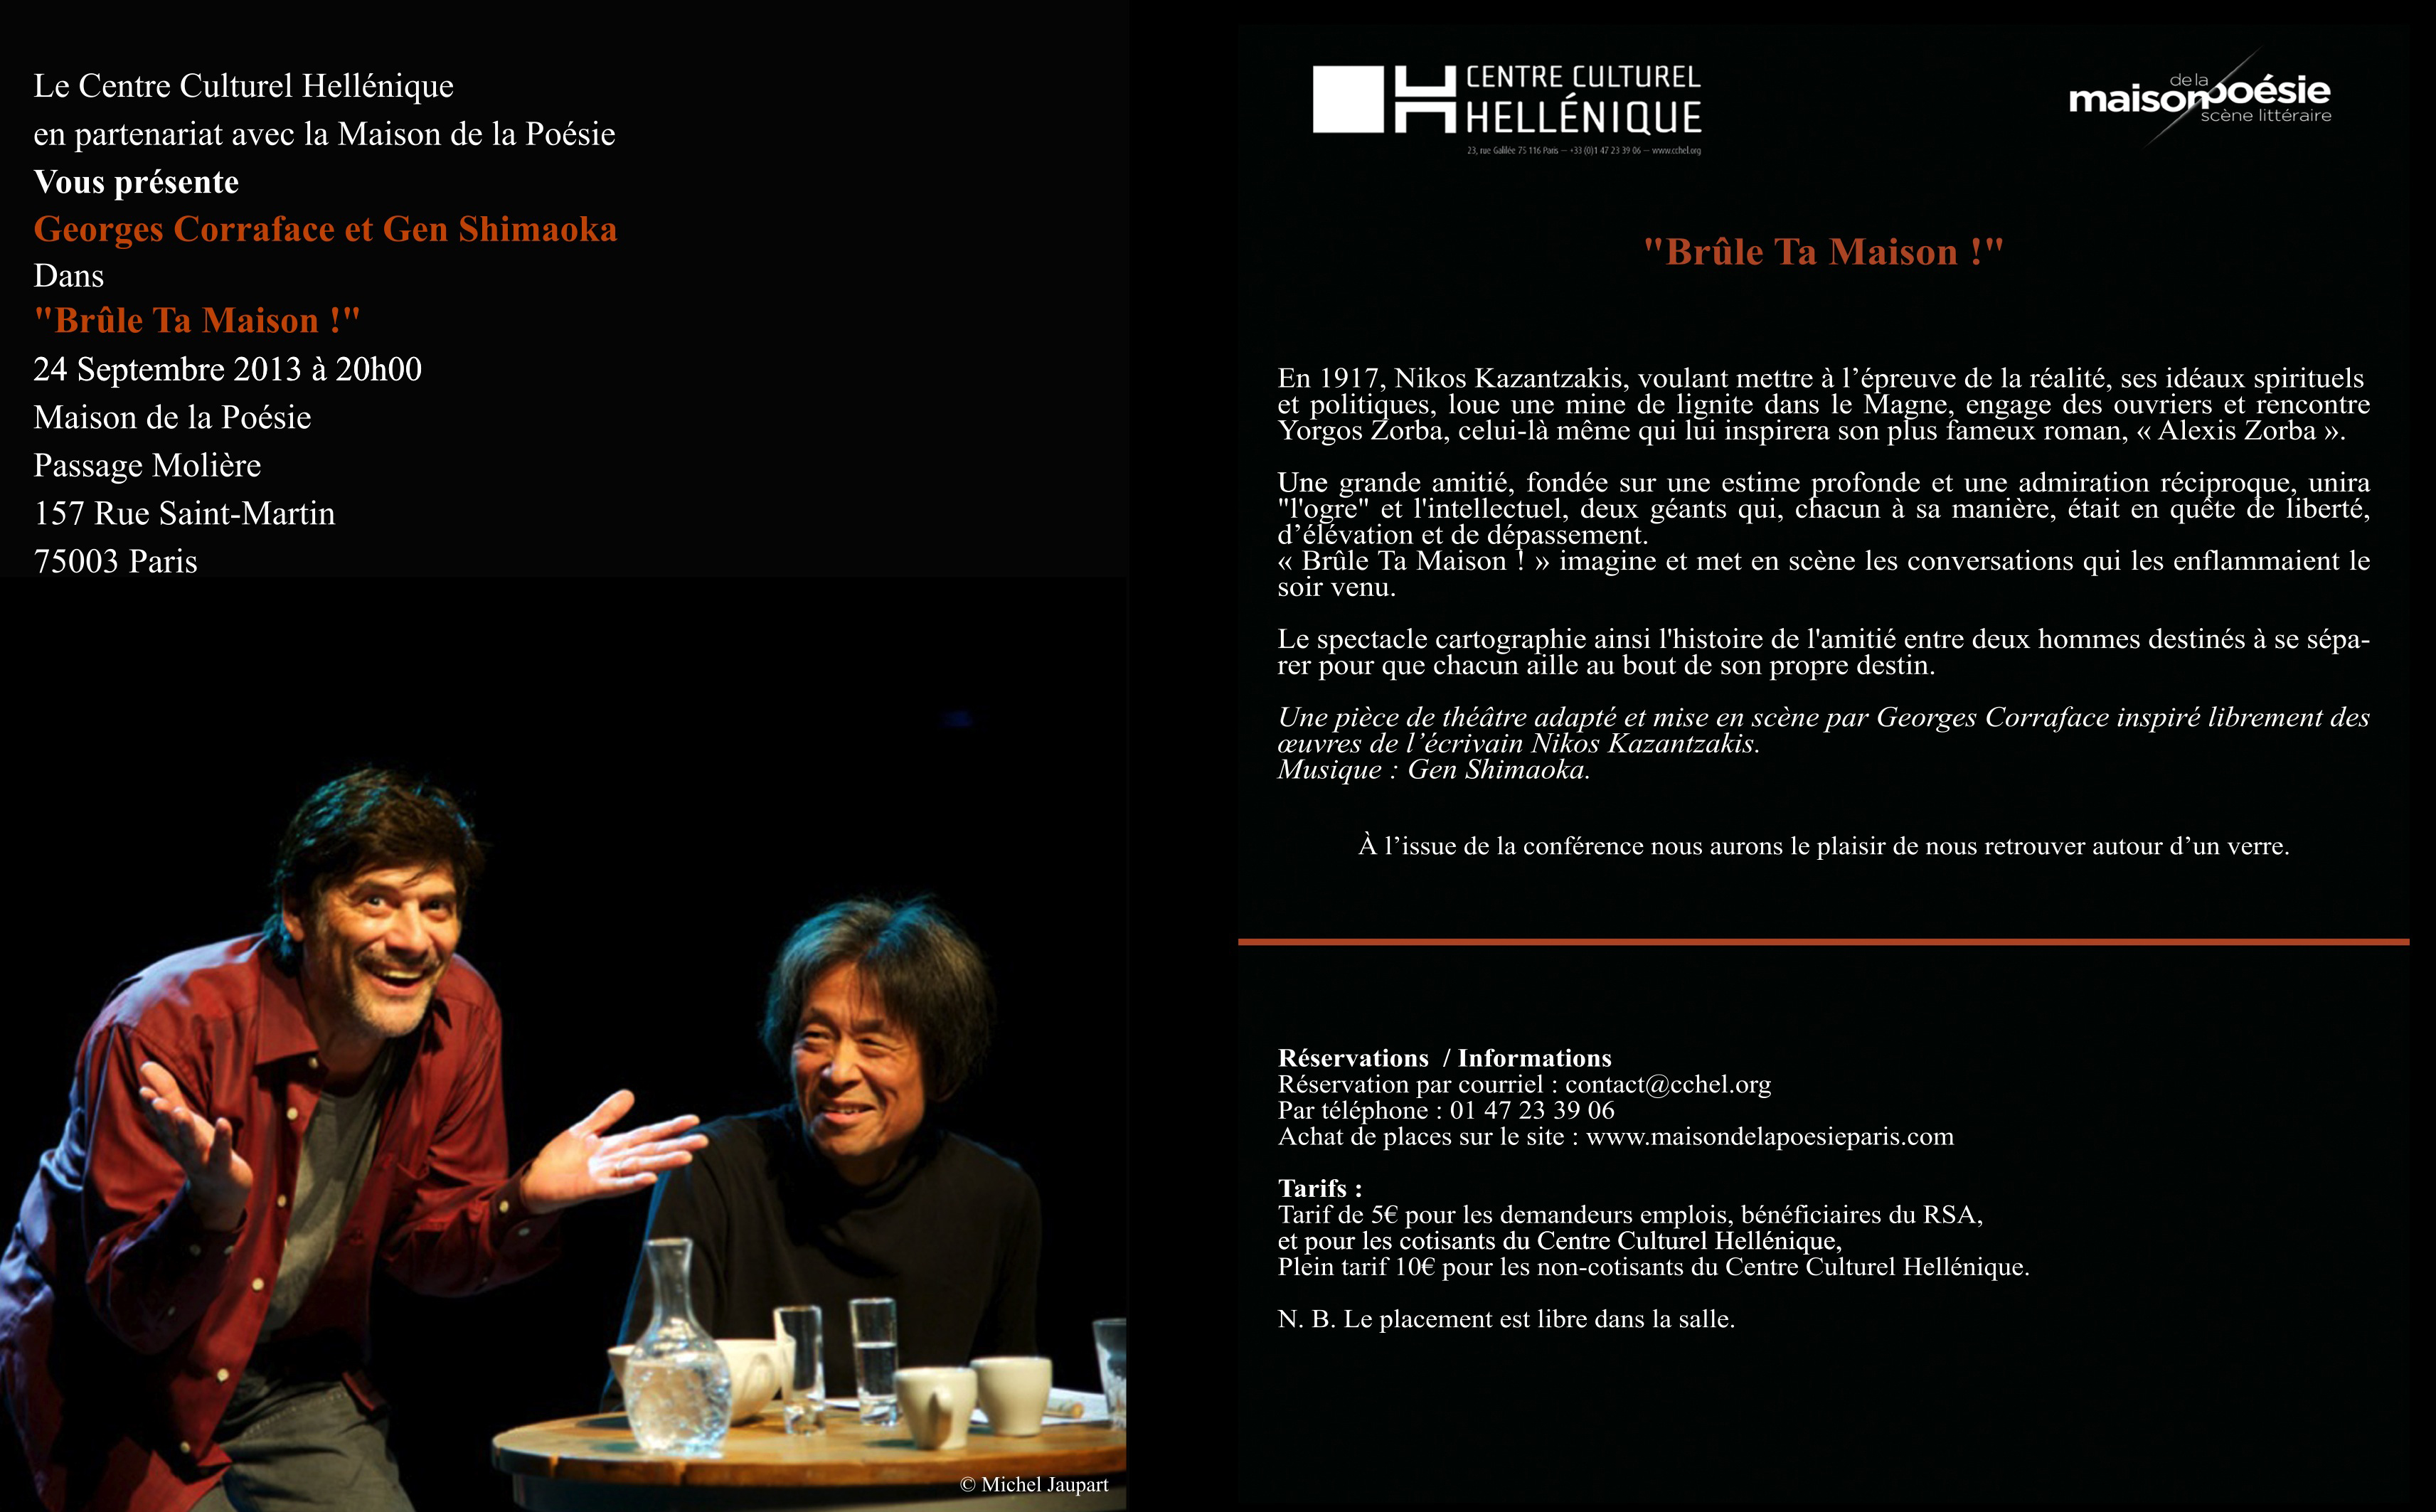 Δελτίο ανακοίνωσης θεατρικής παράστασης του Γιώργου Χωραφά, εμπνευσμένης από το έργο του Νίκου Καζαντζάκη, 24 Σεπτεμβρίου 2013, Maison de la poésie.